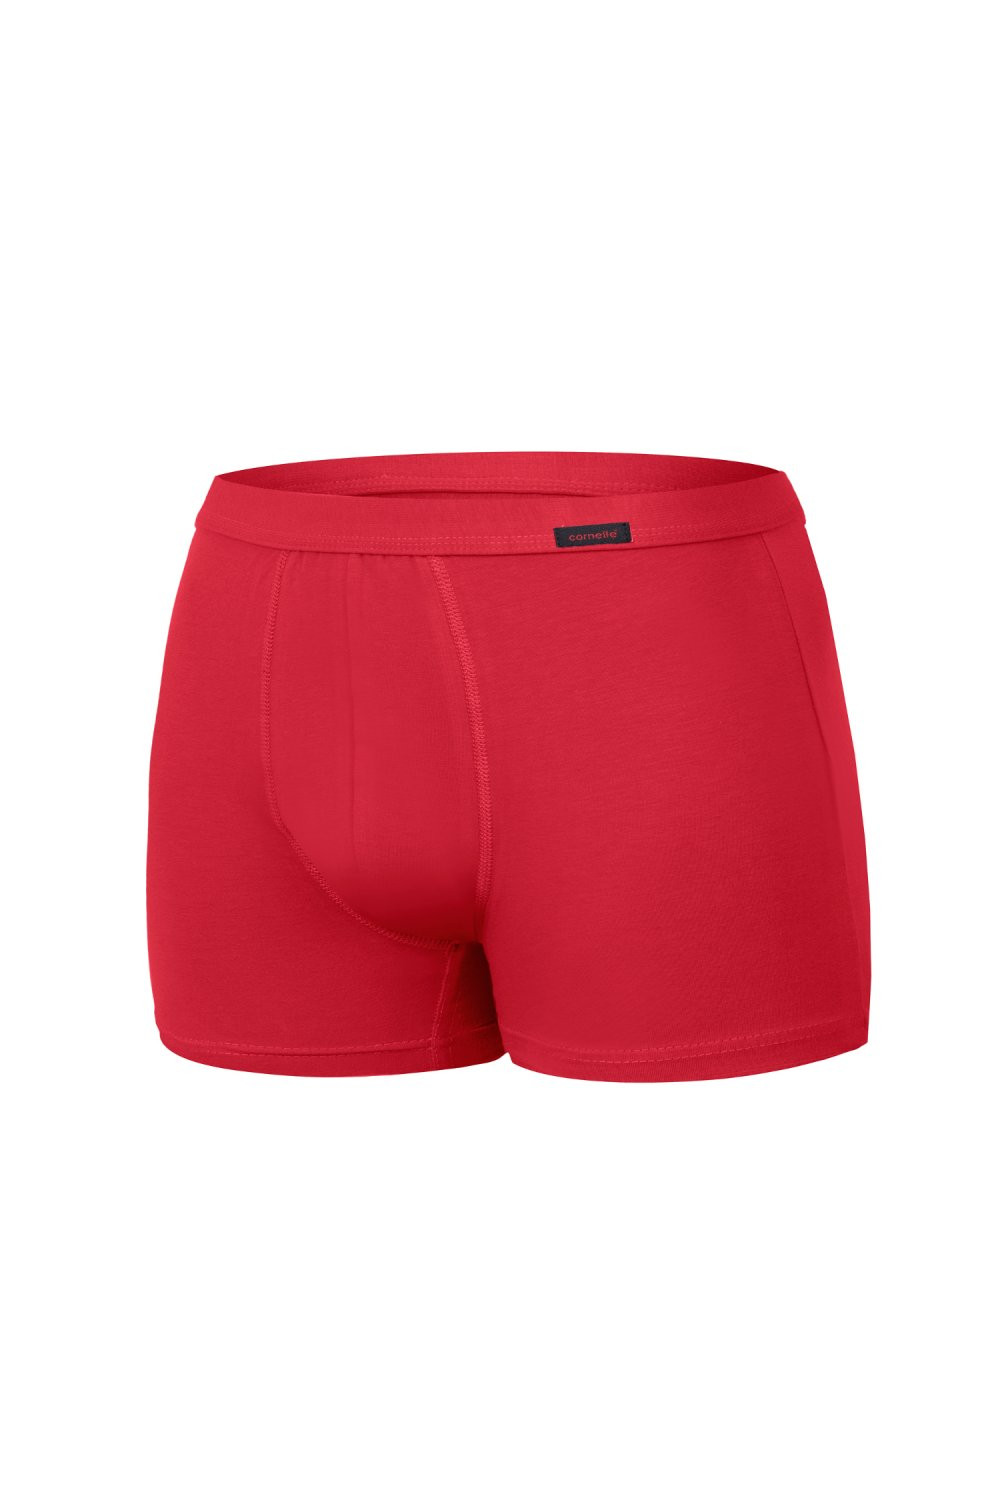 Pánské boxerky 223 Authentic mini red - CORNETTE Červená XL